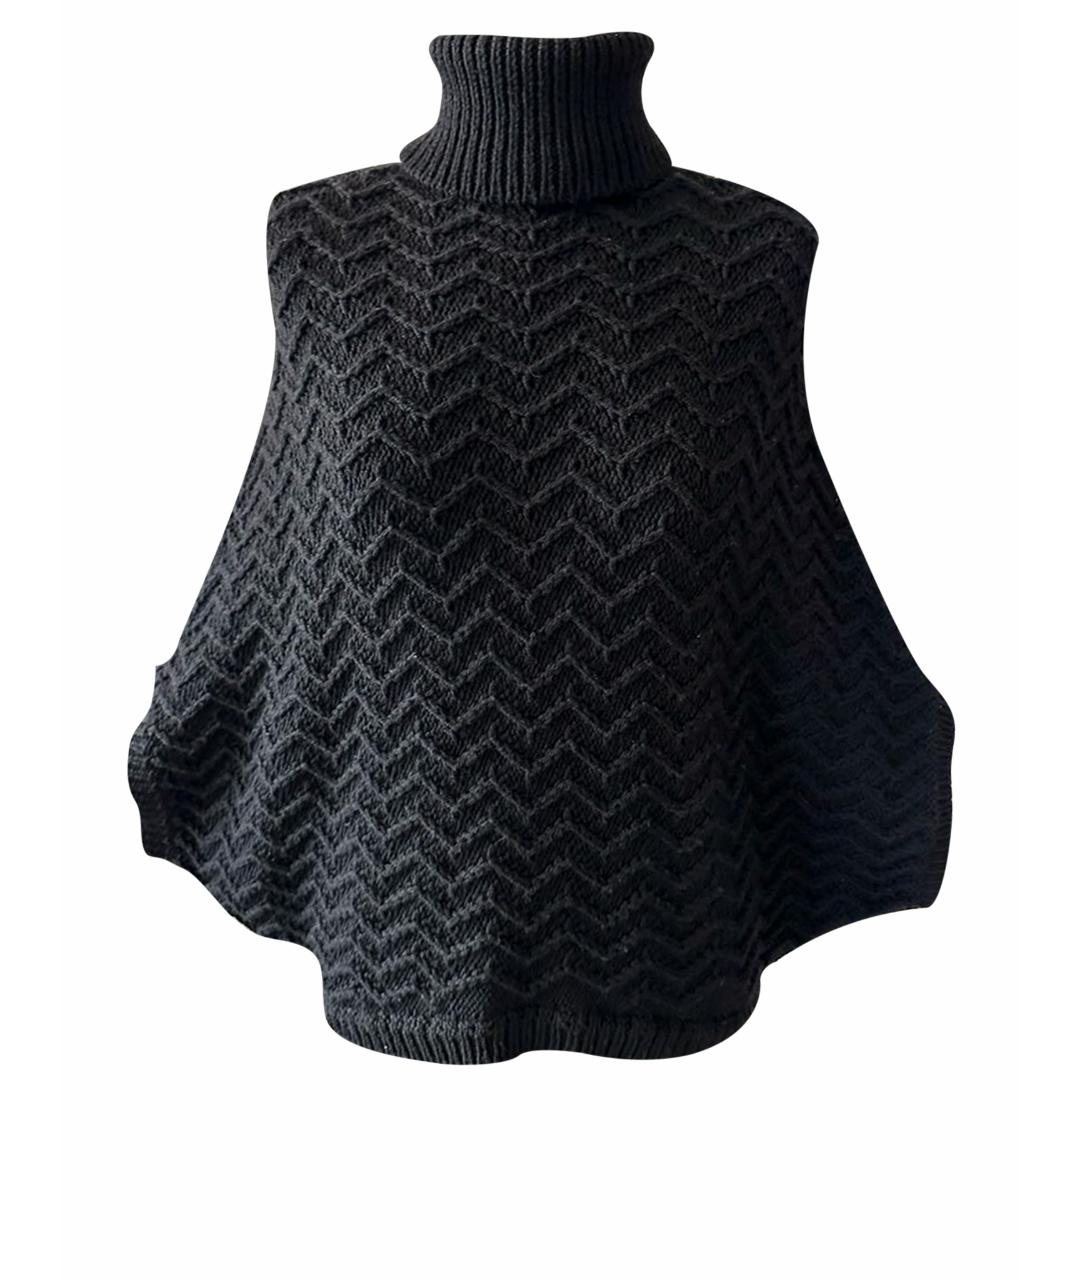 IRFE Черный шерстяной джемпер / свитер, фото 1